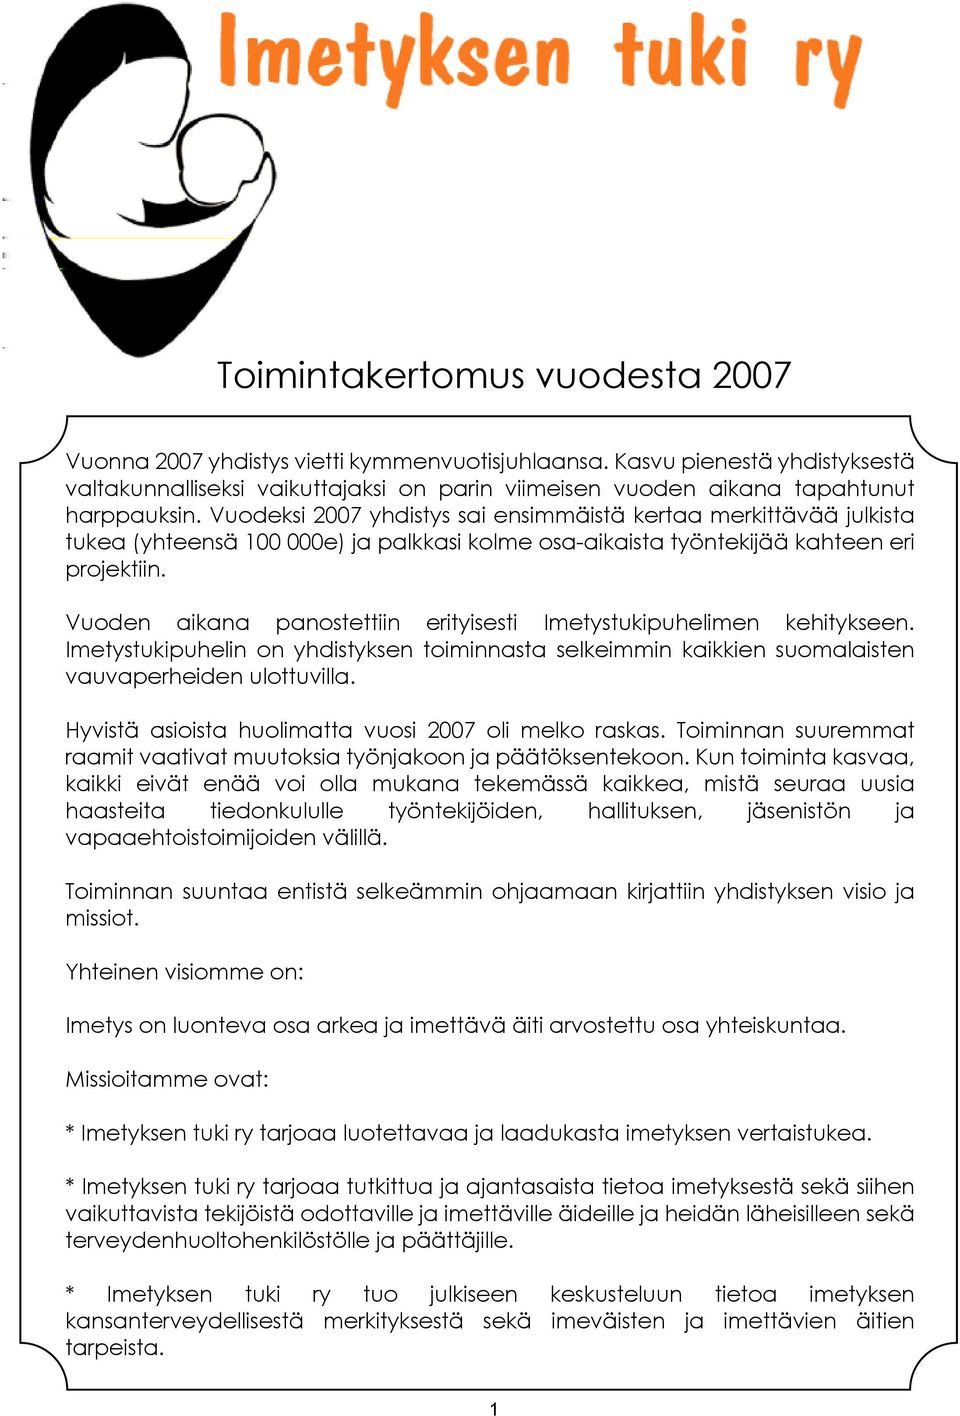 Vuoden aikana panostettiin erityisesti Imetystukipuhelimen kehitykseen. Imetystukipuhelin on yhdistyksen toiminnasta selkeimmin kaikkien suomalaisten vauvaperheiden ulottuvilla.